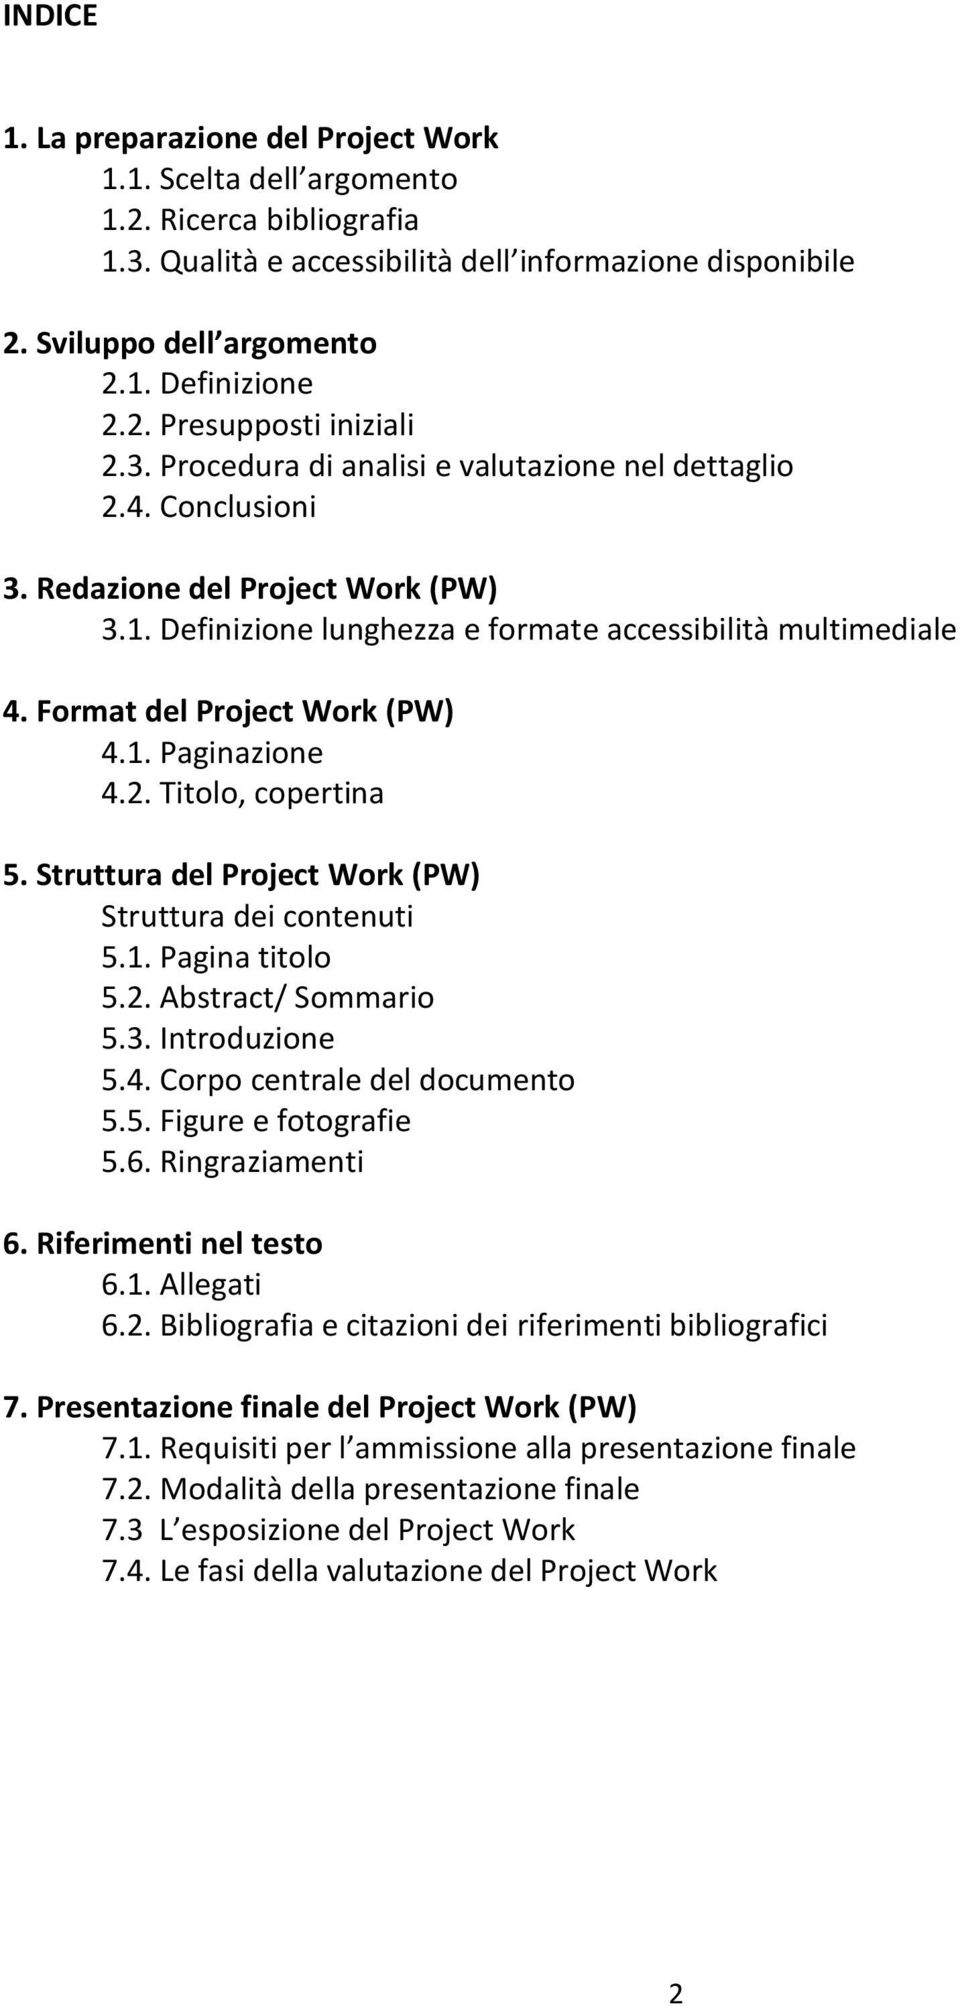 Format del Project Work (PW) 4.1. Paginazione 4.2. Titolo, copertina 5. Struttura del Project Work (PW) Struttura dei contenuti 5.1. Pagina titolo 5.2. Abstract/ Sommario 5.3. Introduzione 5.4. Corpo centrale del documento 5.